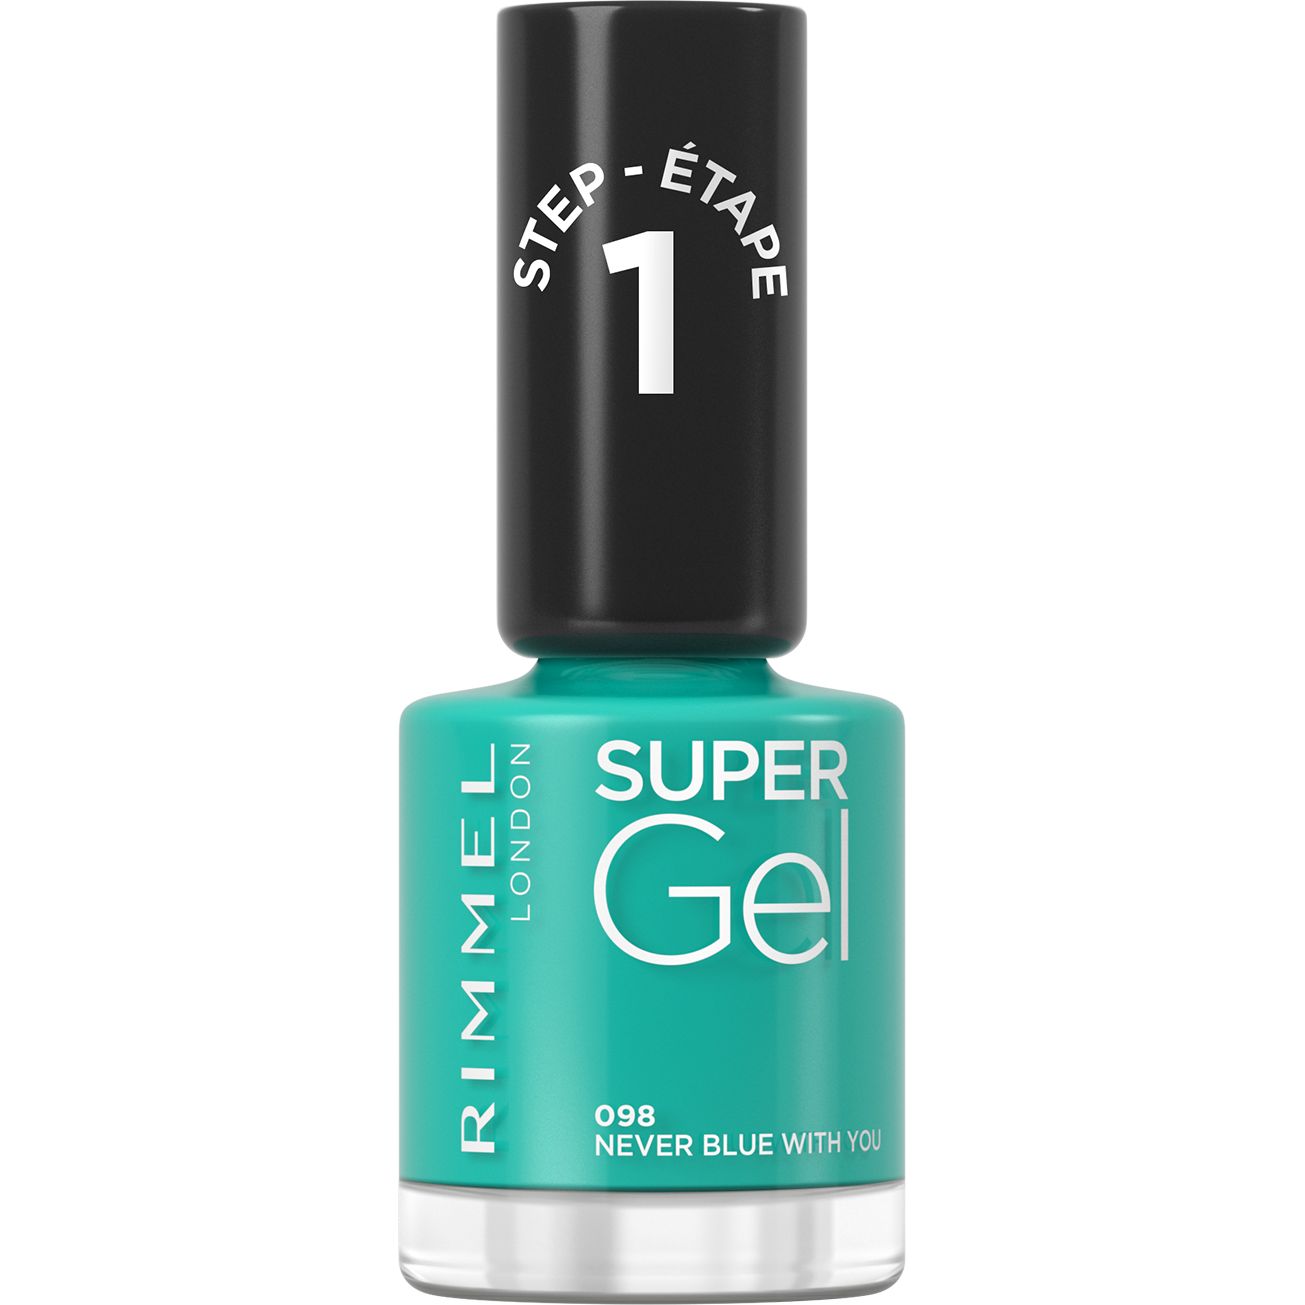 Гель-лак для нігтів Rimmel Super Gel, відтінок 098 (Never Blue With You), 12 мл - фото 1